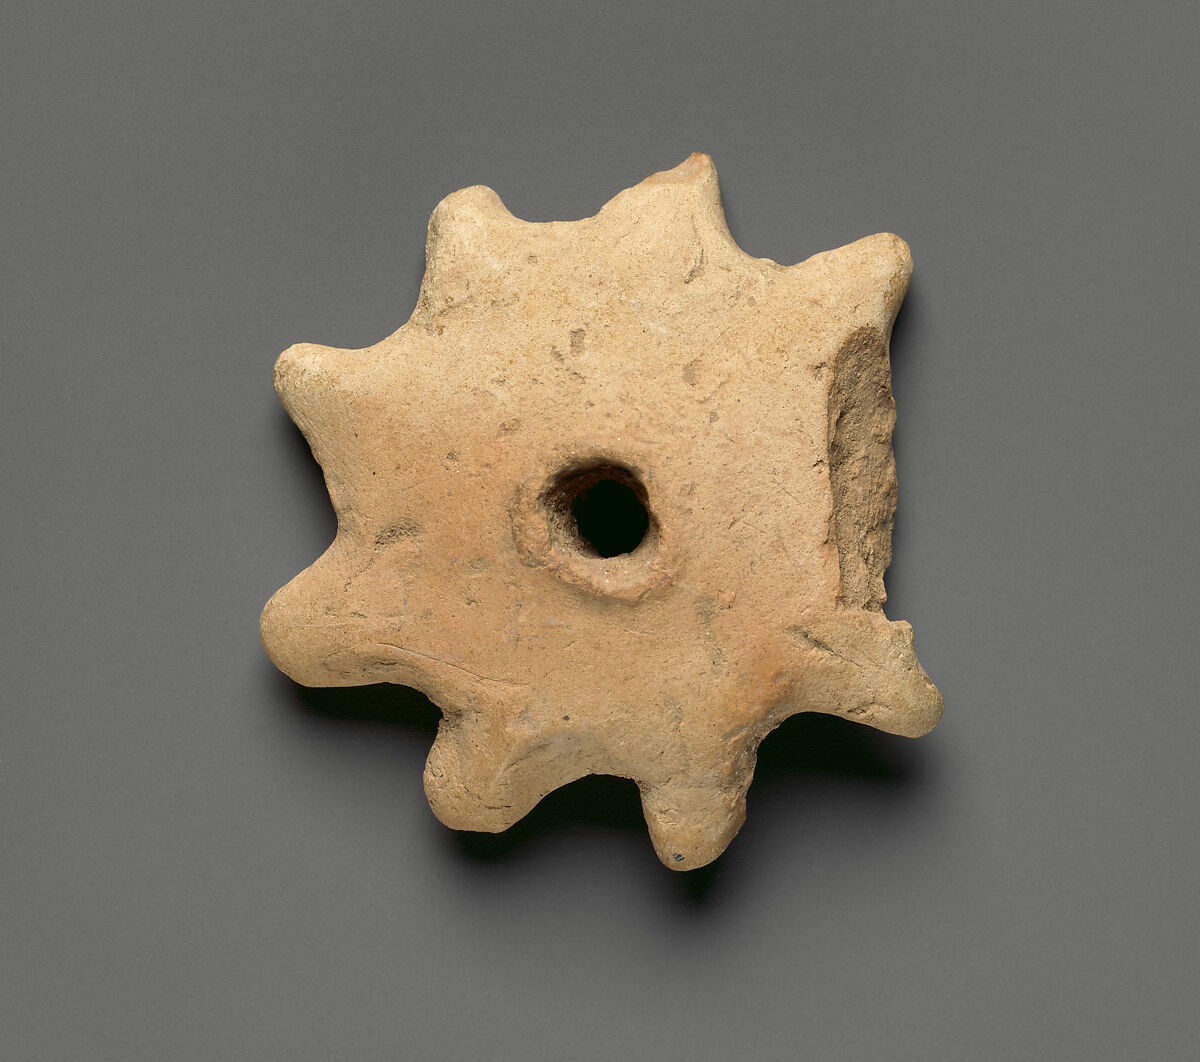 Spindle whorl, Ceramic, Sumerian 